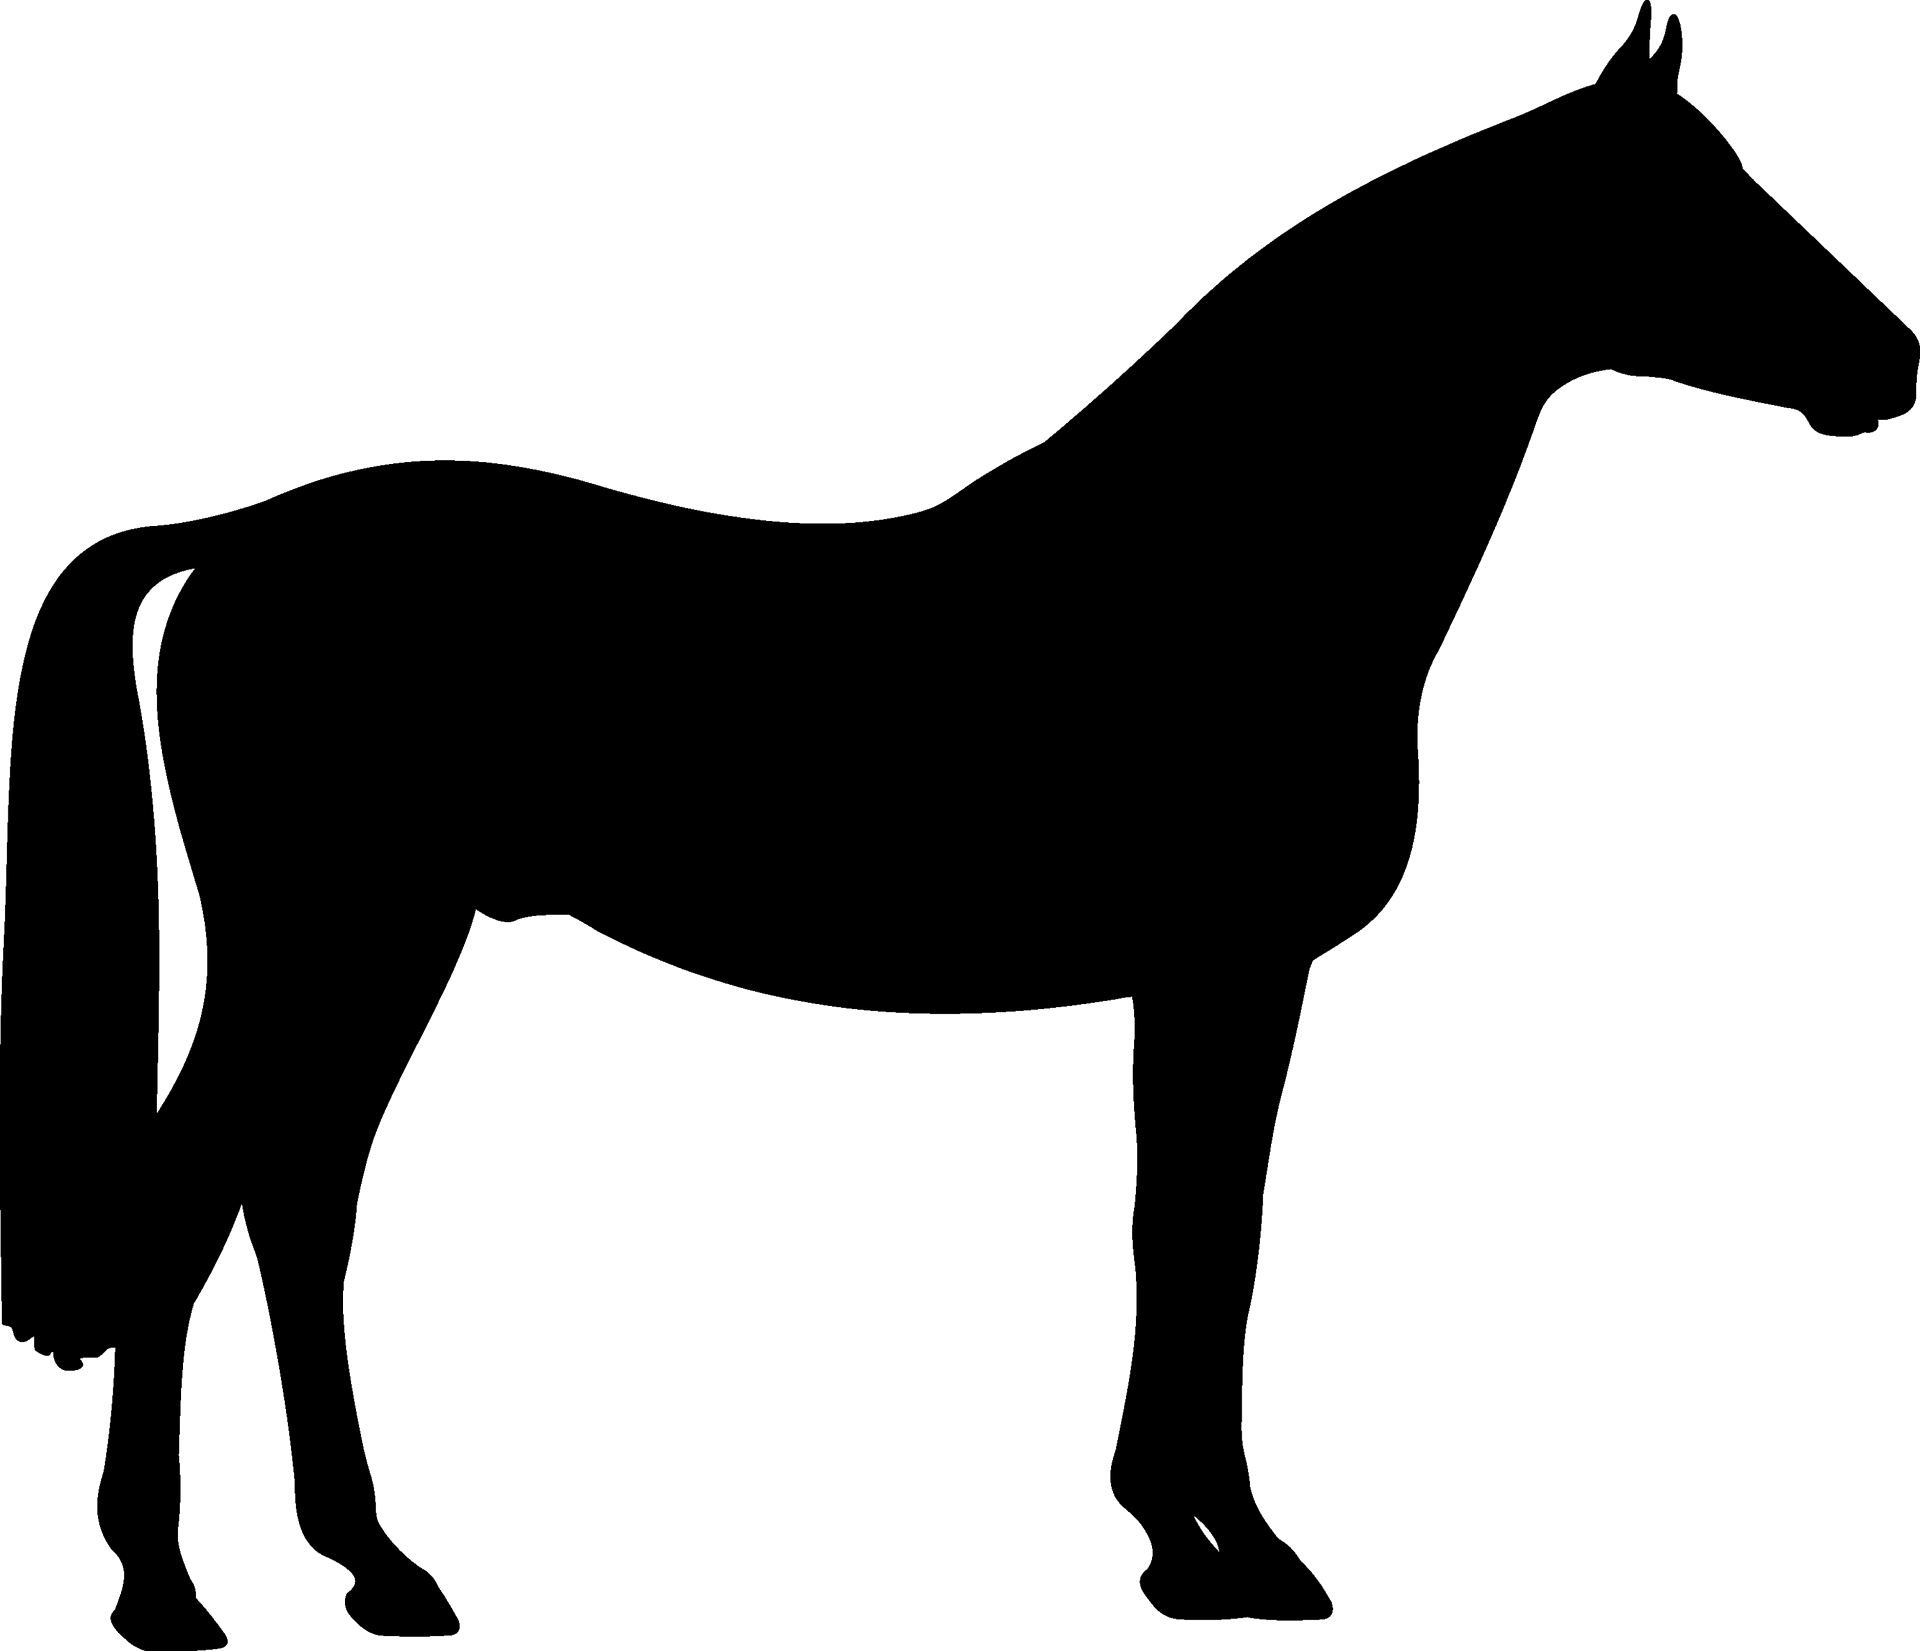 horseplaceholder